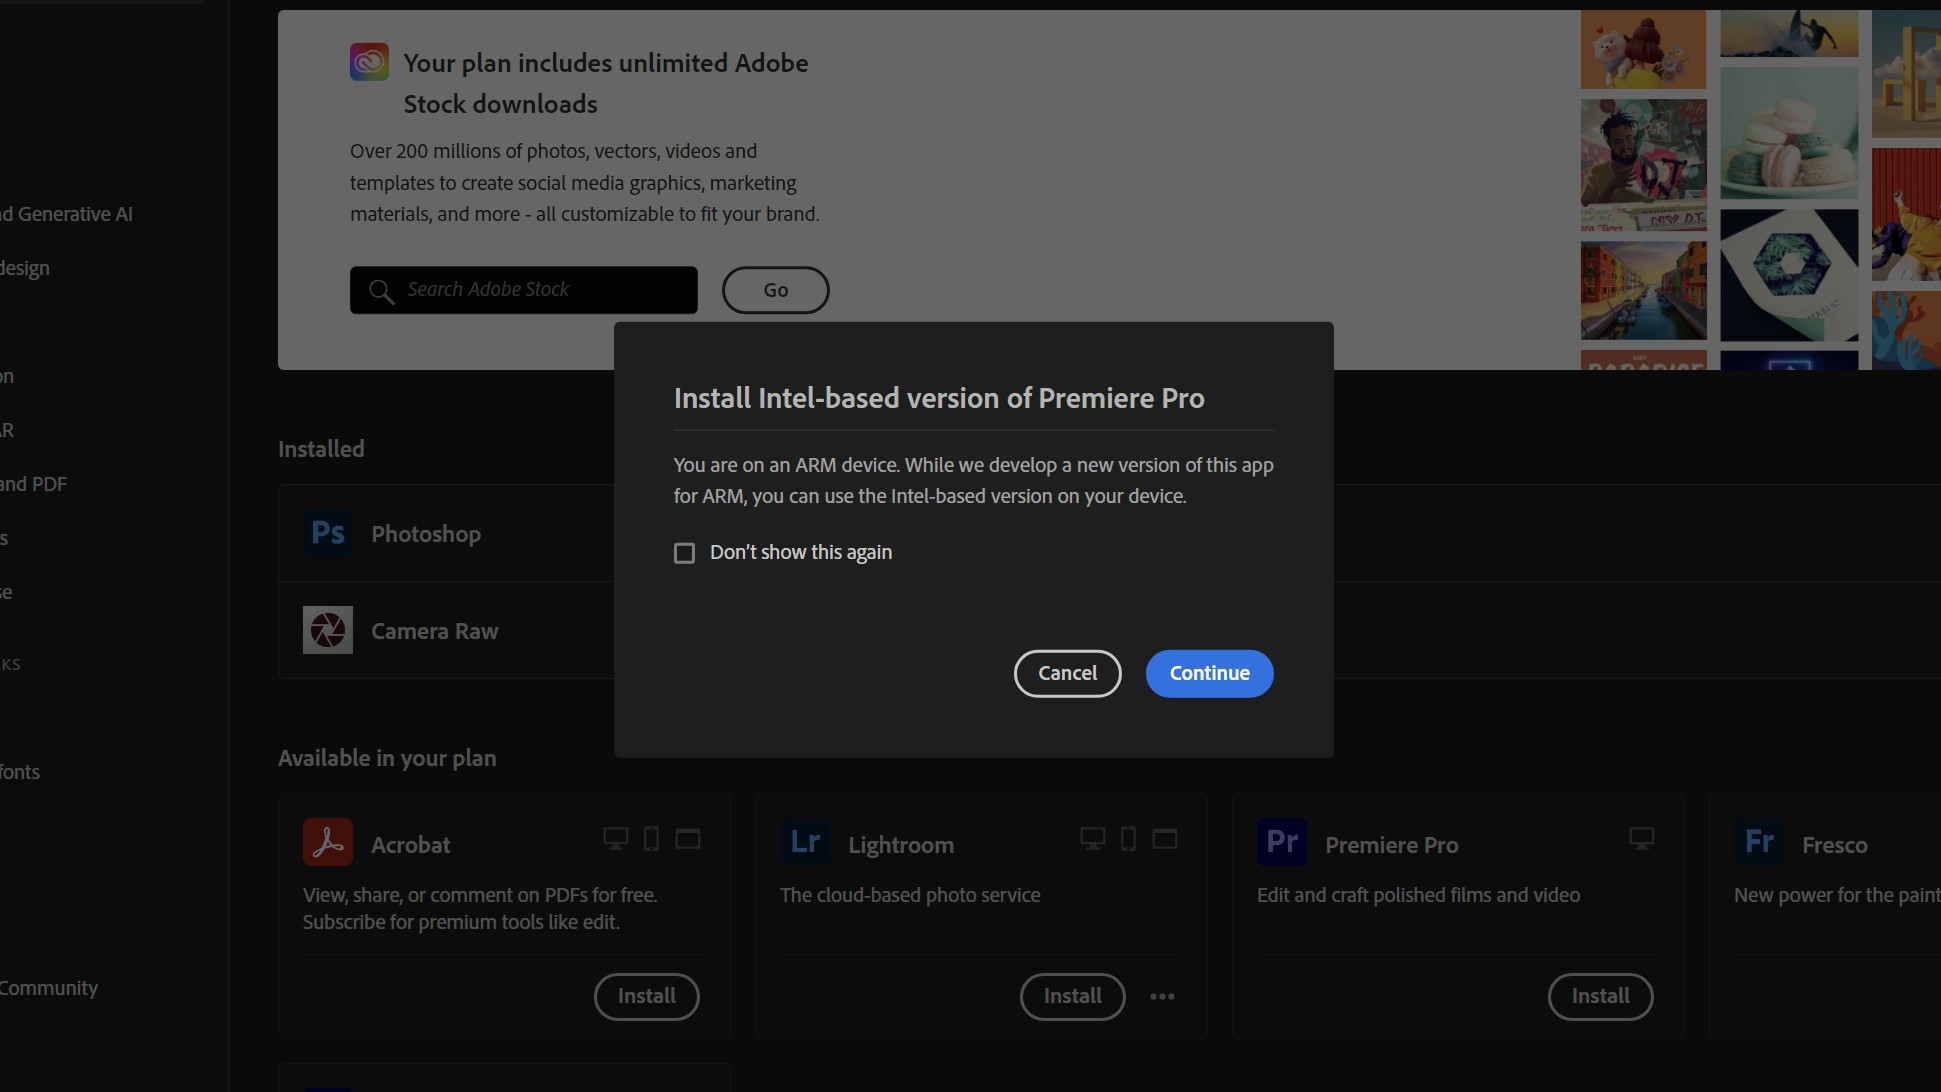 Adobe Premiere Pro on ARM